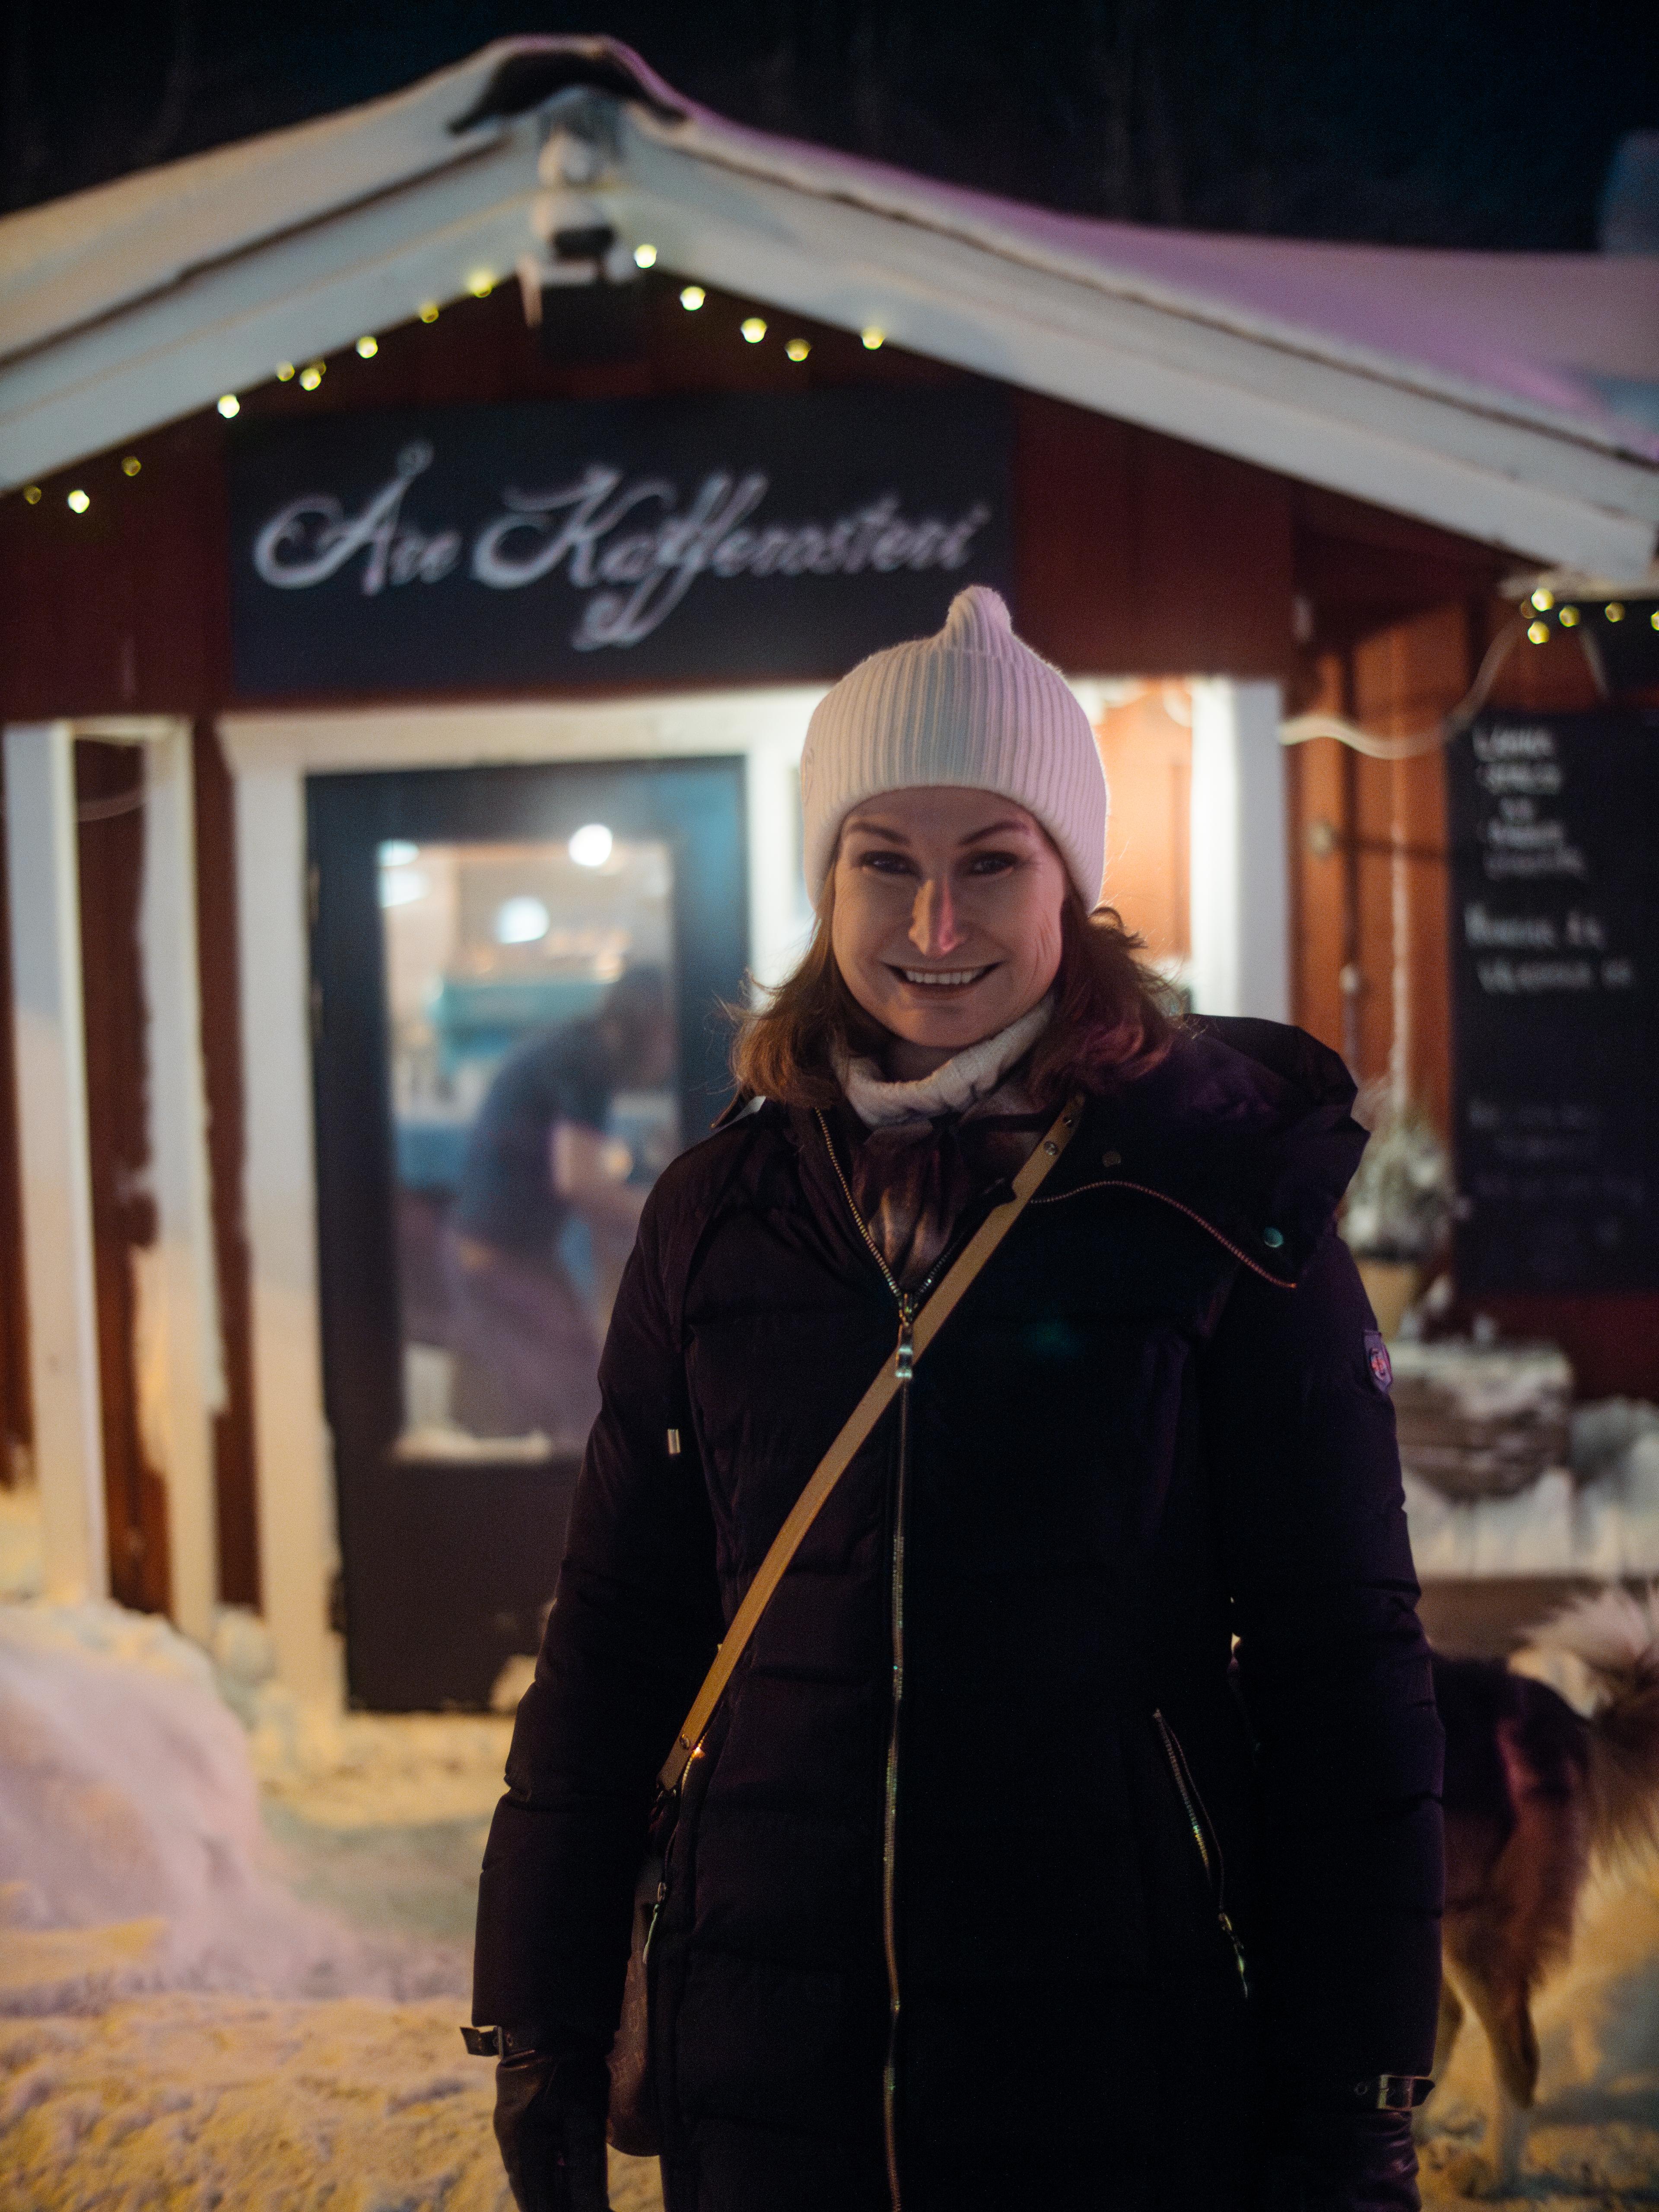 Viveca utenfor Åre Kafferosteri, hvor Hanna og Daniel pleier å møtes for en kaffe